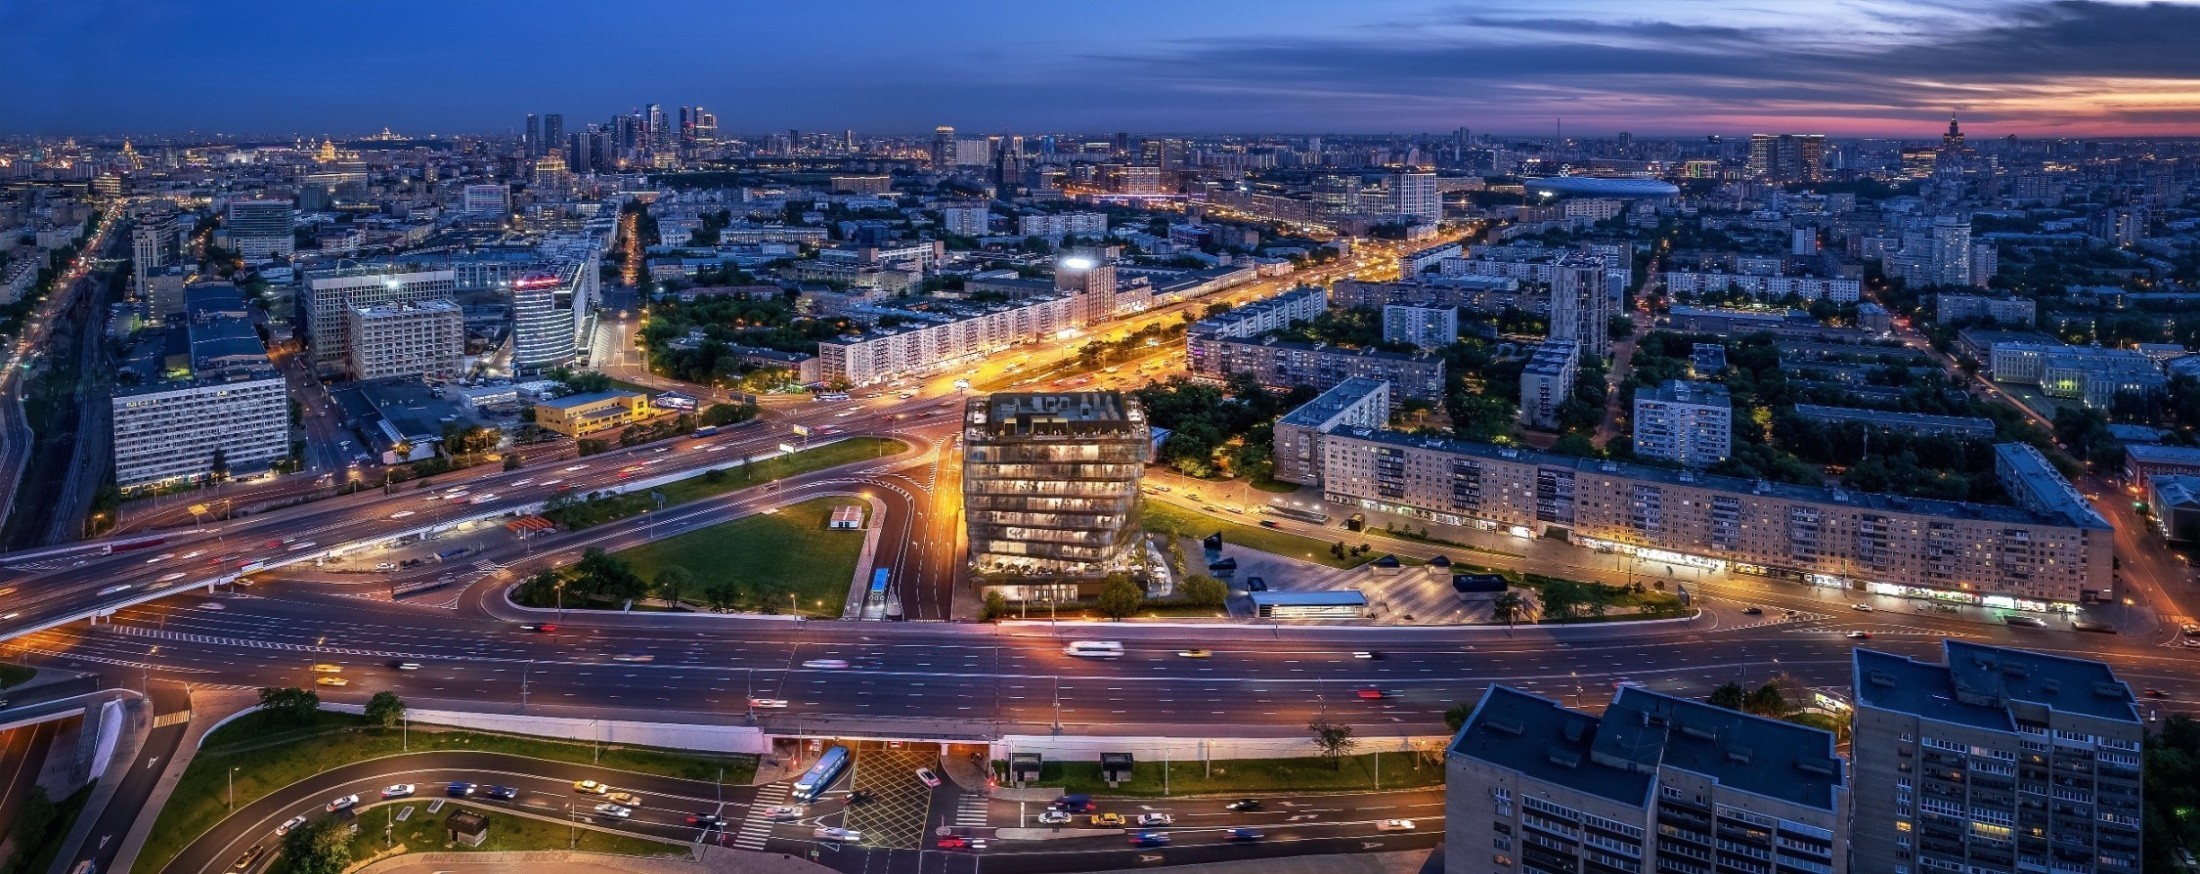 Sminex-Интеко признан лидером рынка элитной недвижимости Москвы